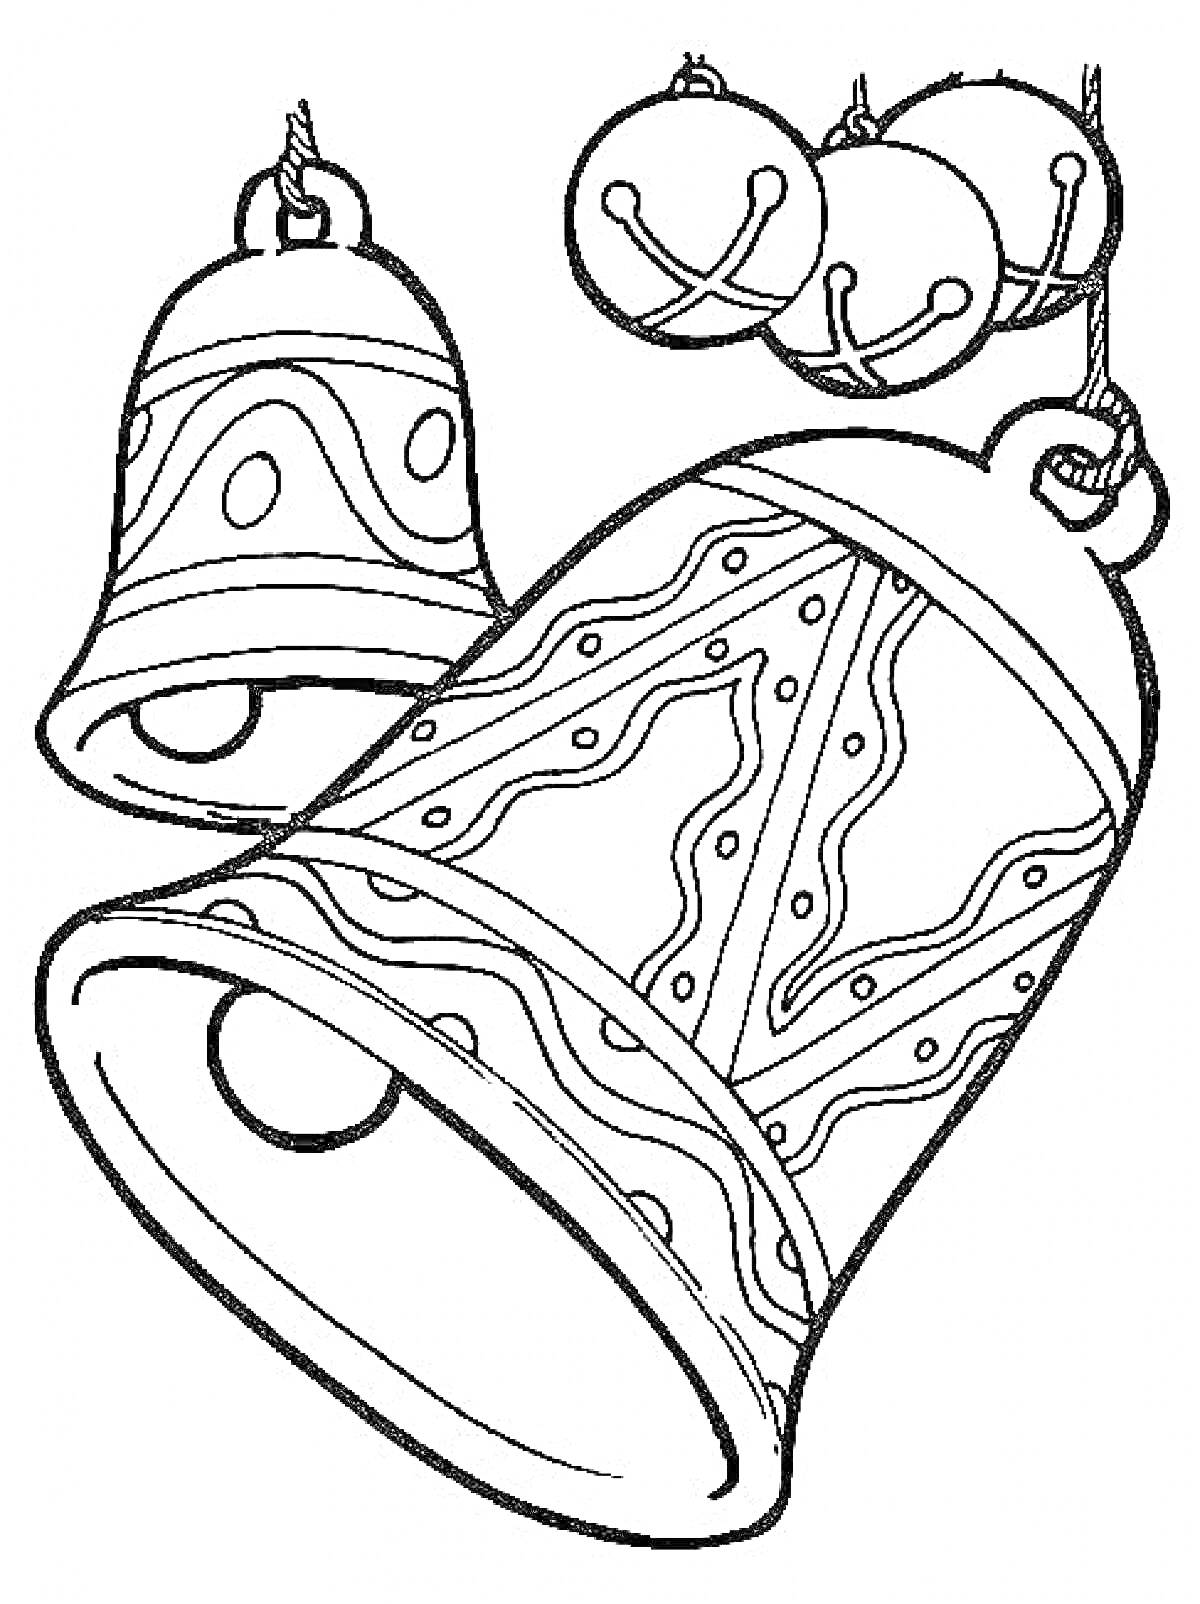 Раскраска Новогодние колокольчики с узорами и маленькими колокольчиками